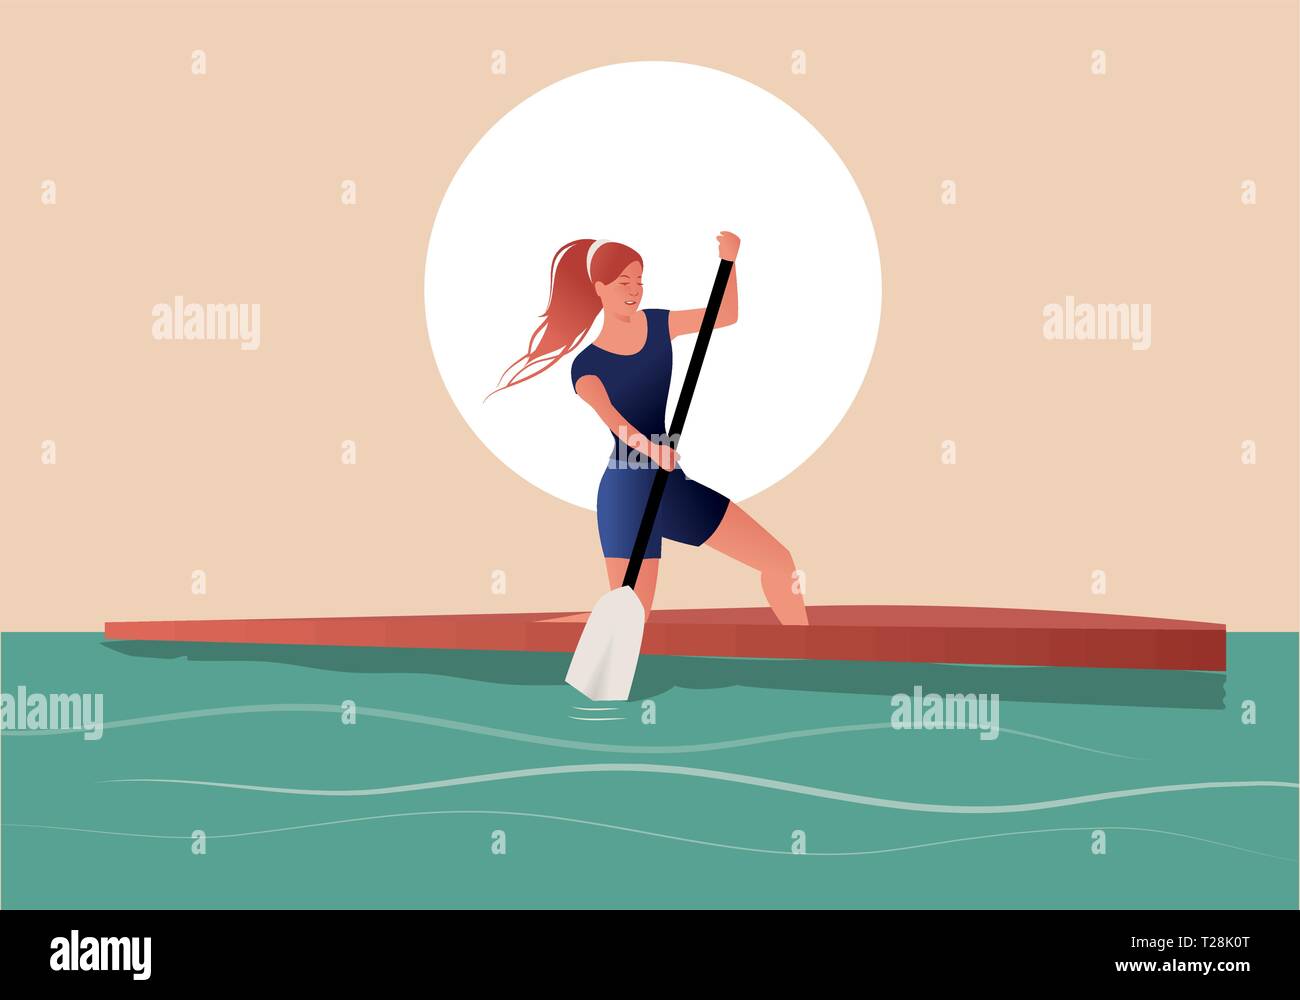 Fille de l'athlète avec des cheveux dans le vent la pratique de l'aviron sportive dans un canot Illustration de Vecteur